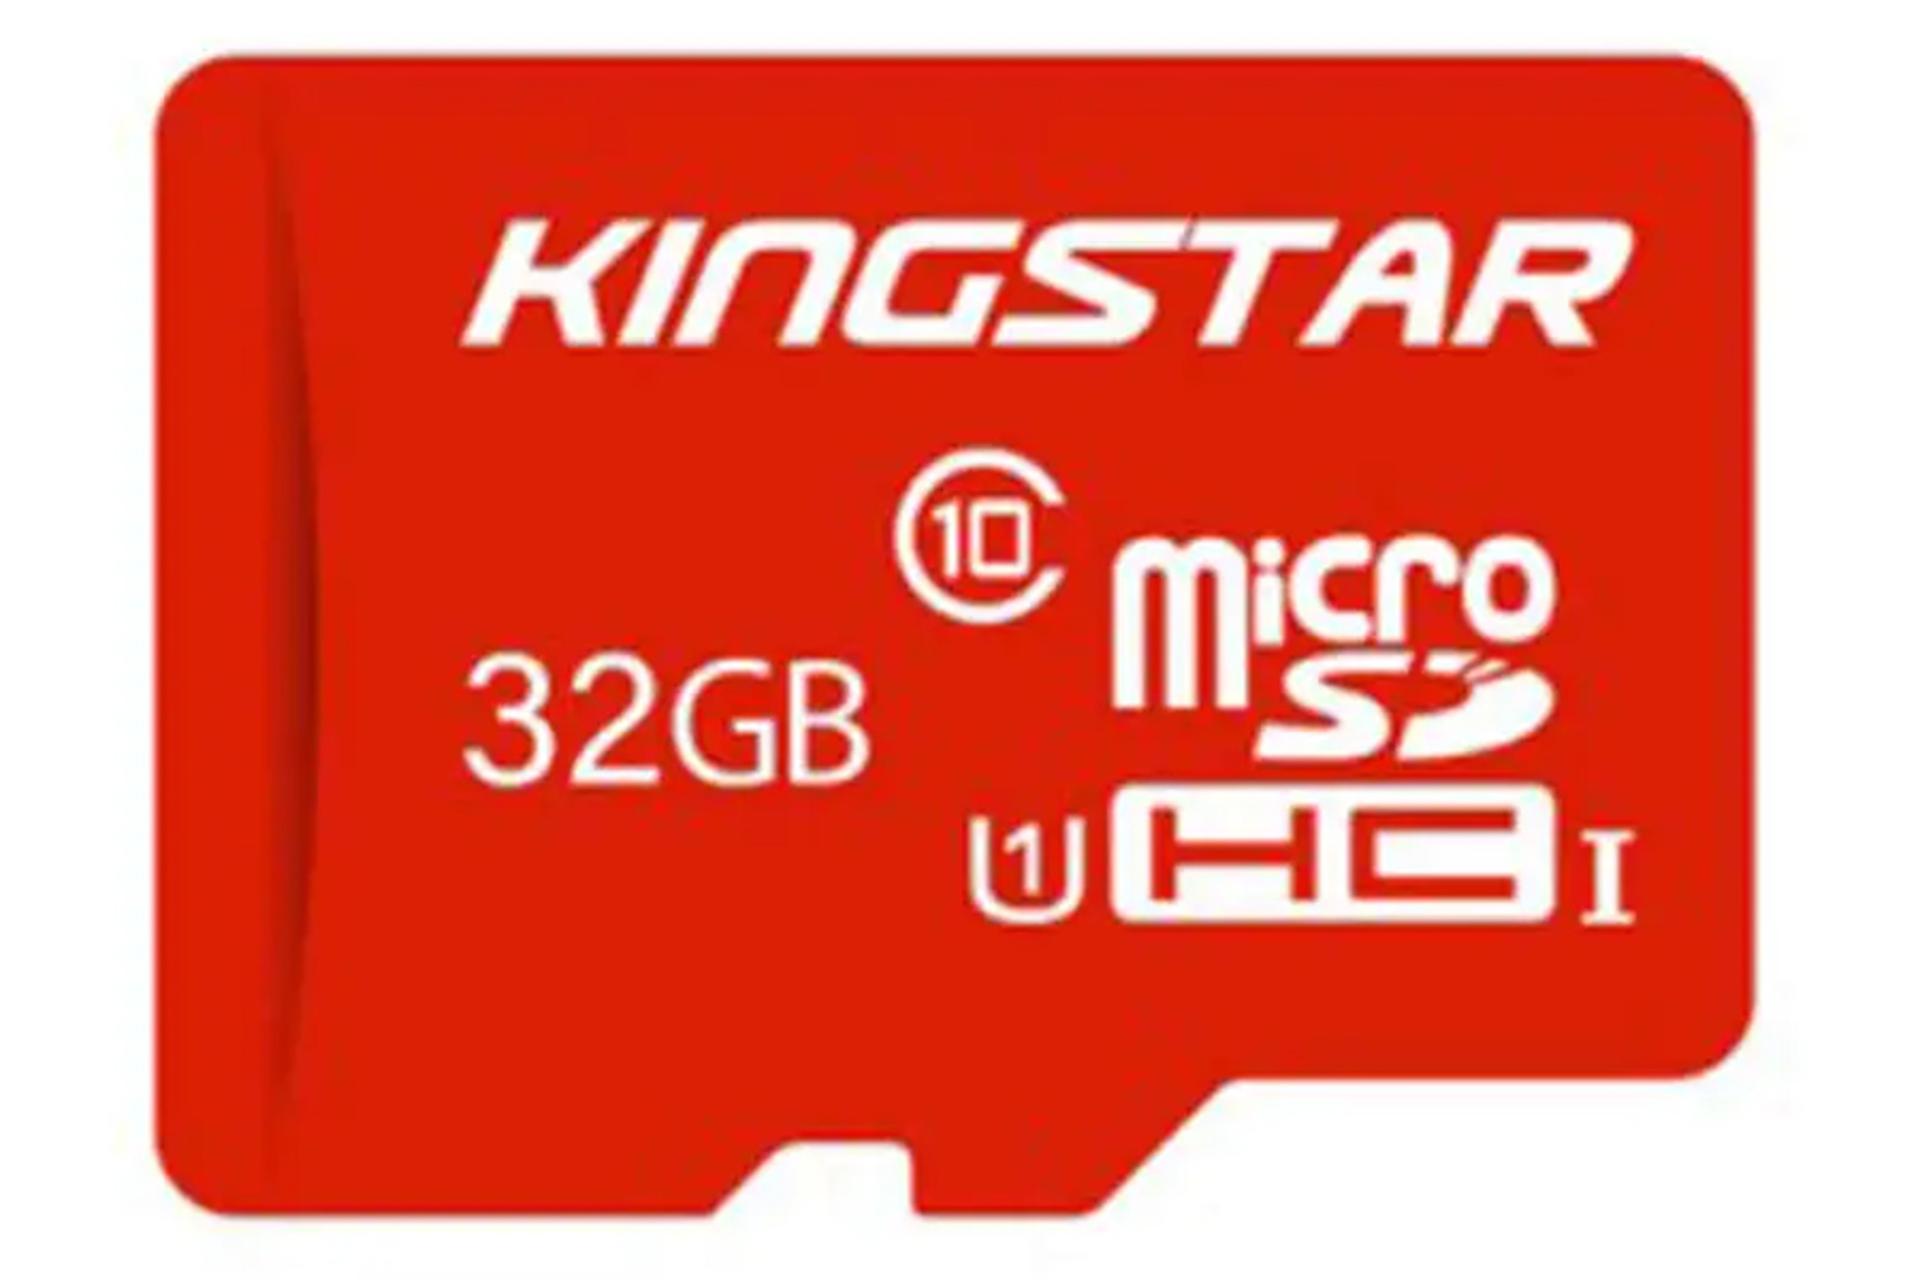 کارت حافظه کینگ استار microSDHC با ظرفیت 32 گیگابایت کلاس 10 قرمز